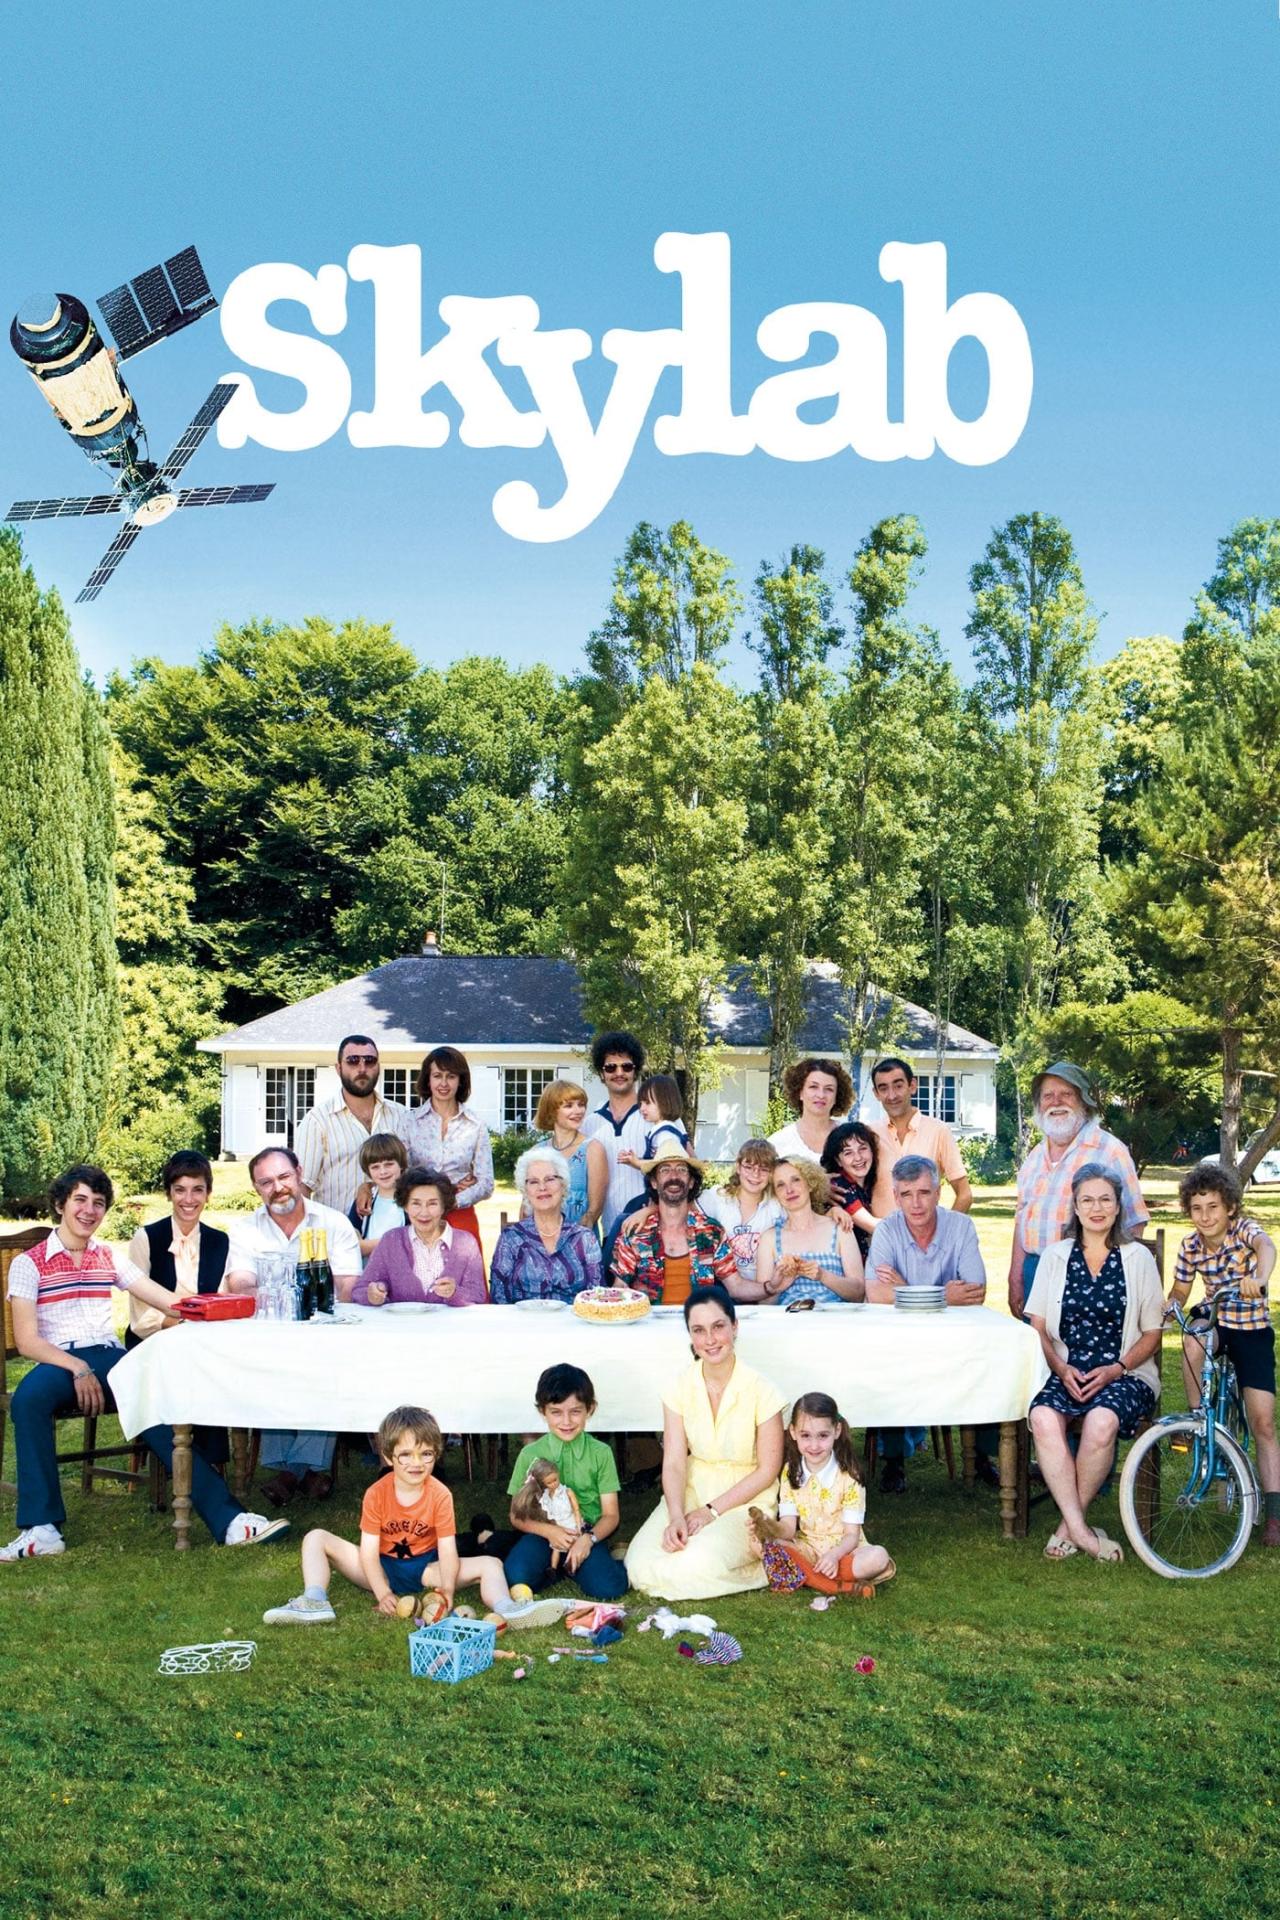 Le Skylab est-il disponible sur Netflix ou autre ?